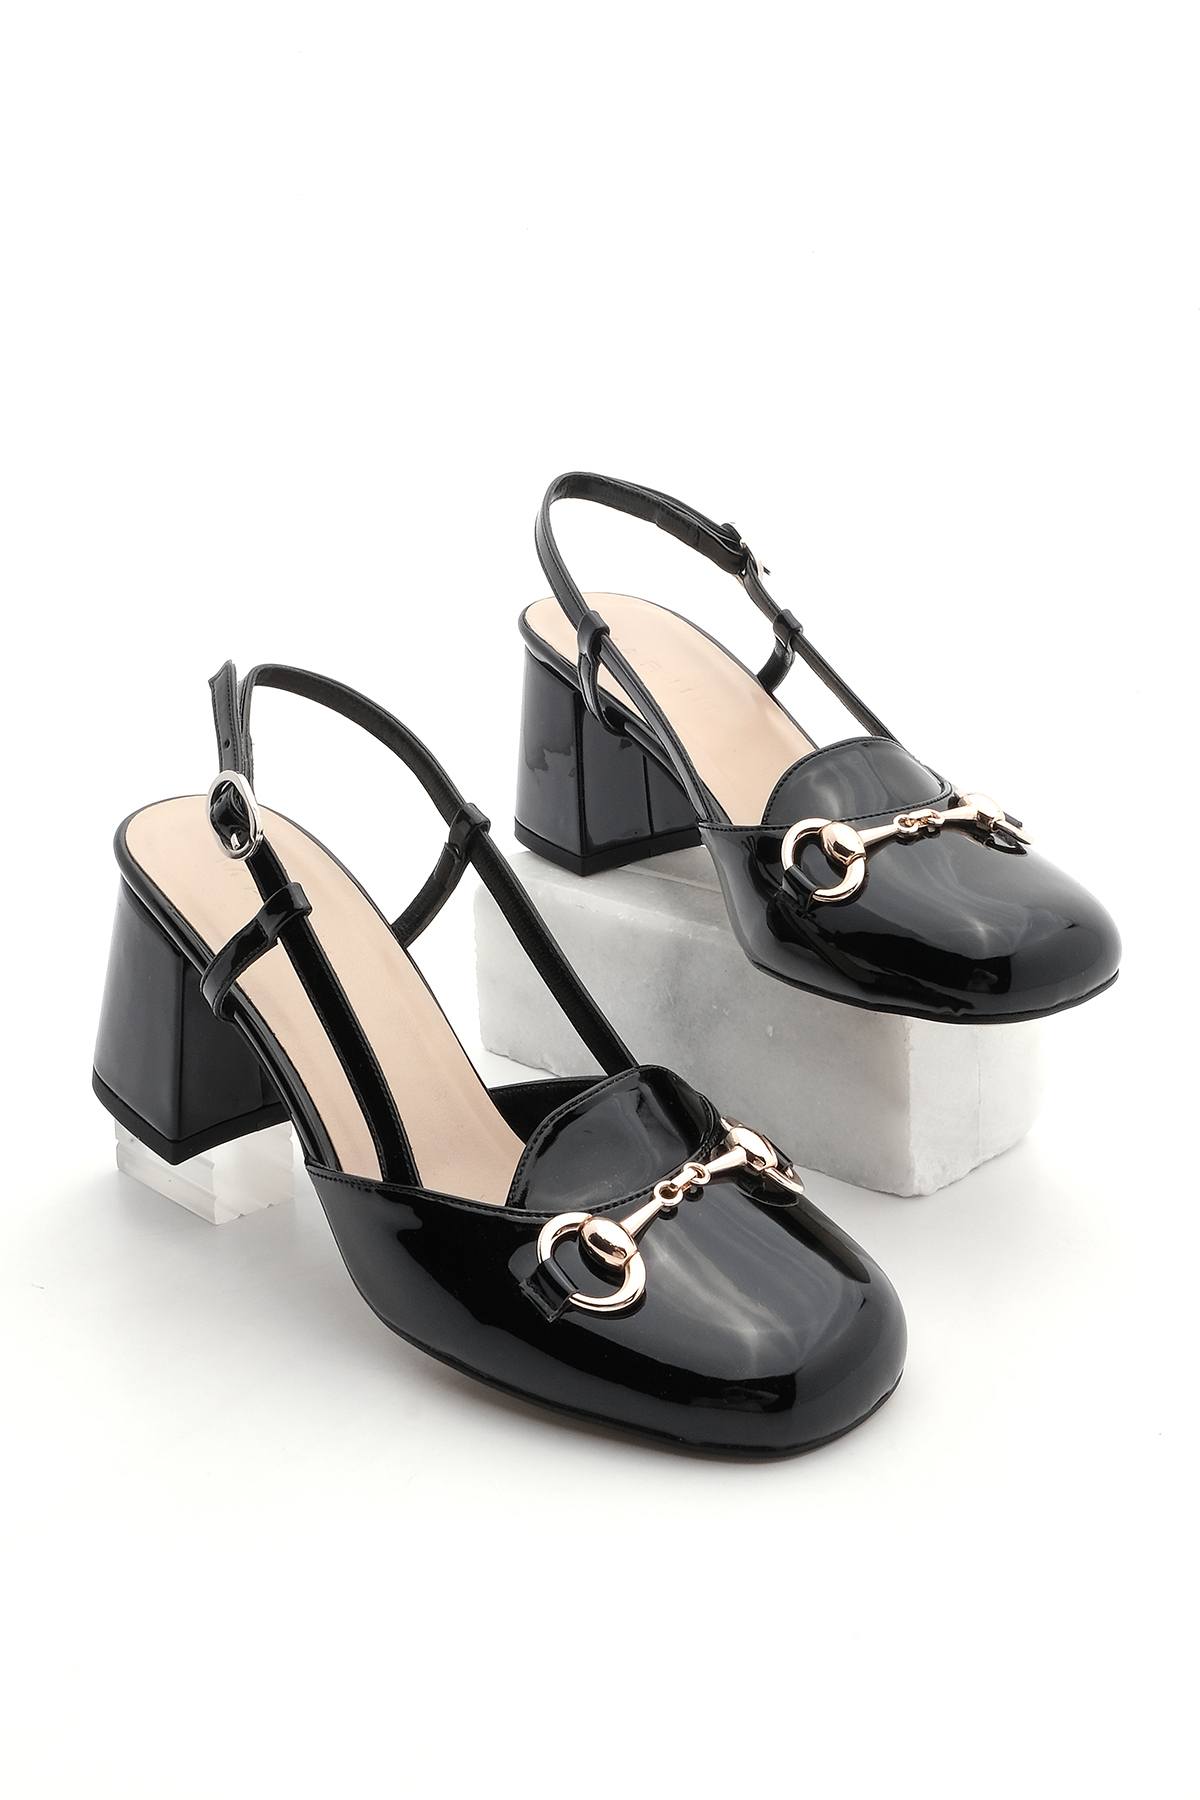 Marjin Women's Chunky Heel Buckled Open Back Classic Heel Shoes Mirka Black Patent Leather